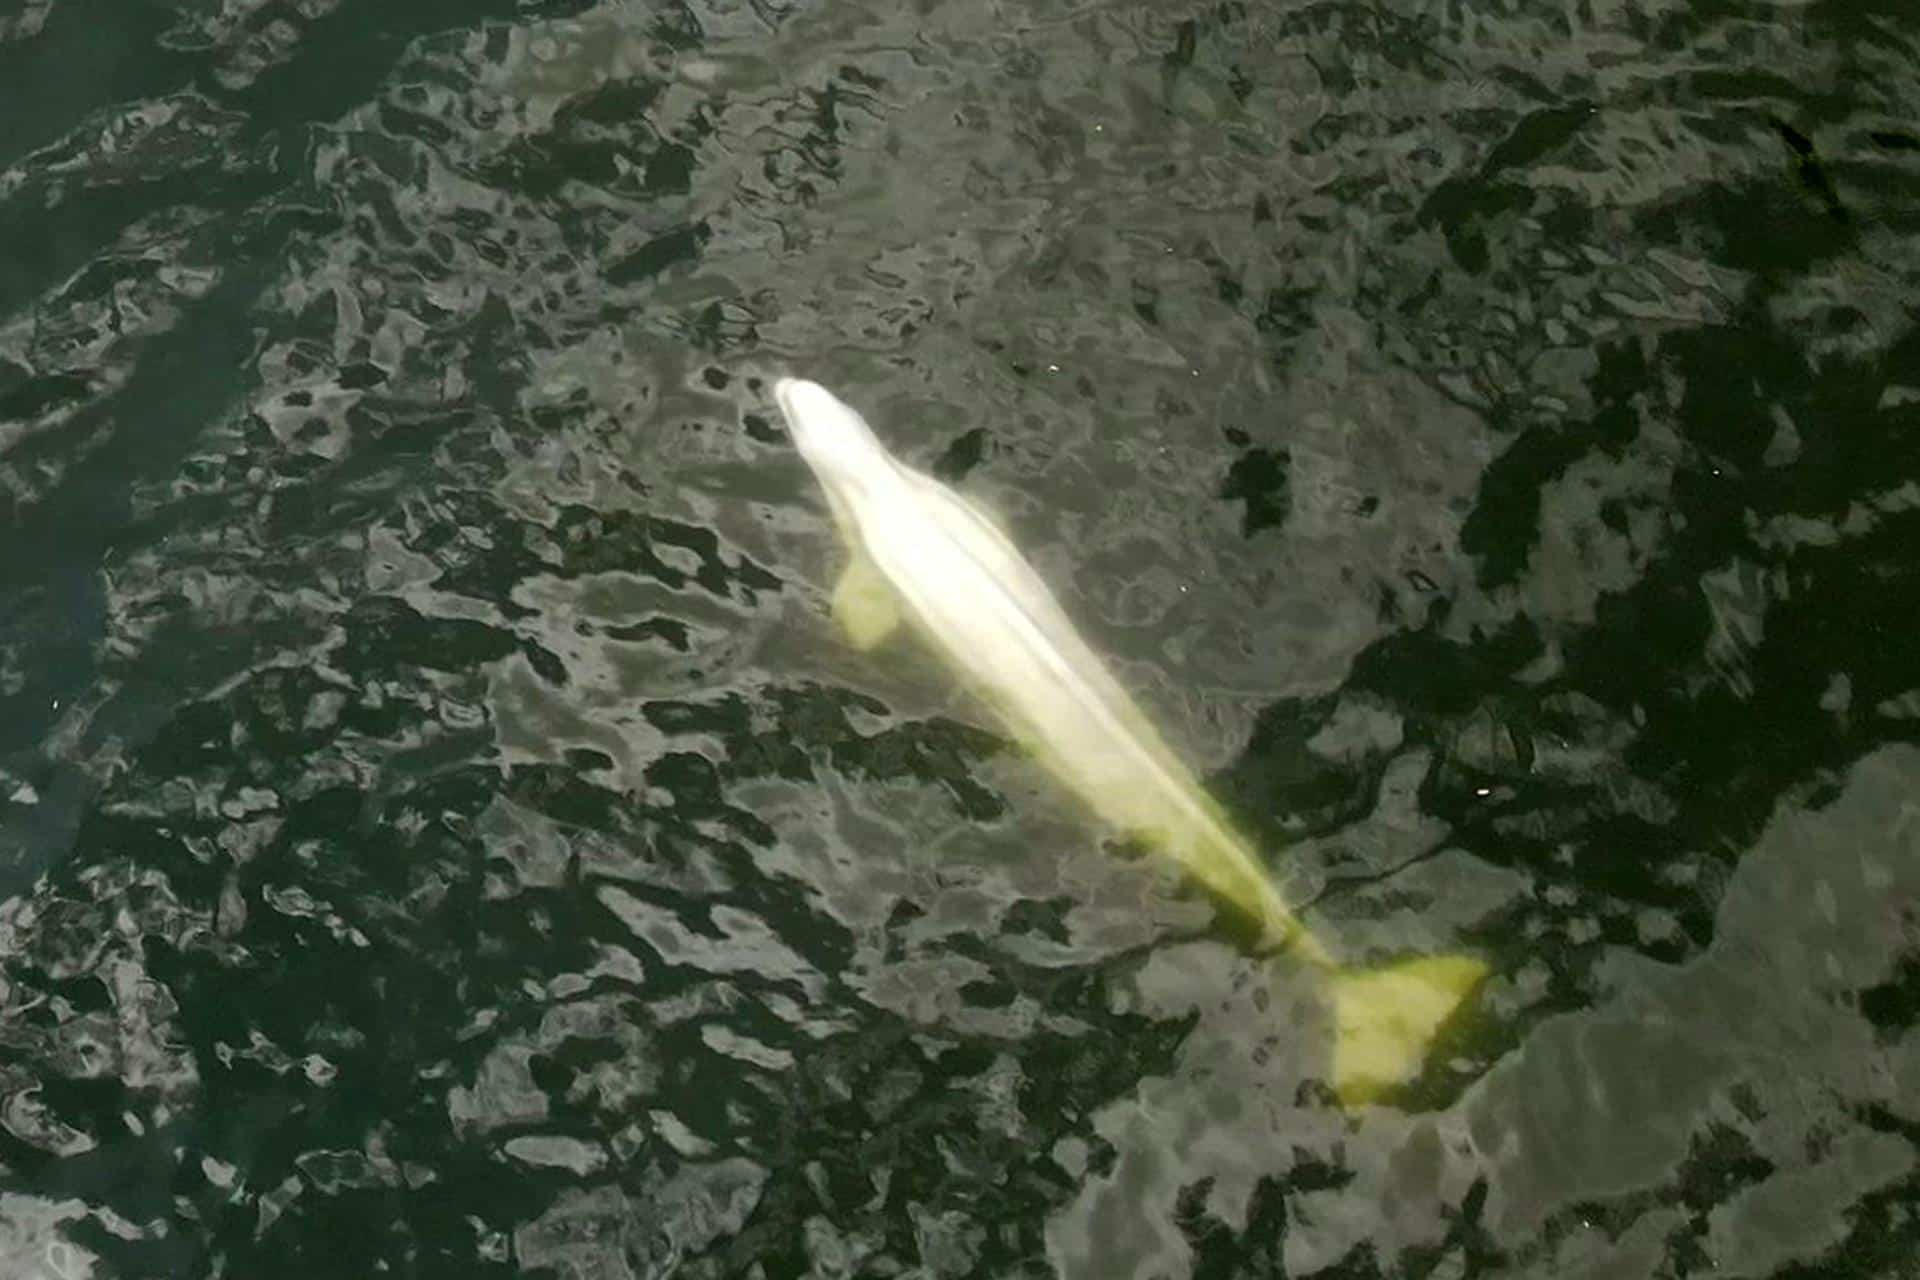 Transportarán al mar a beluga perdida en río Sena